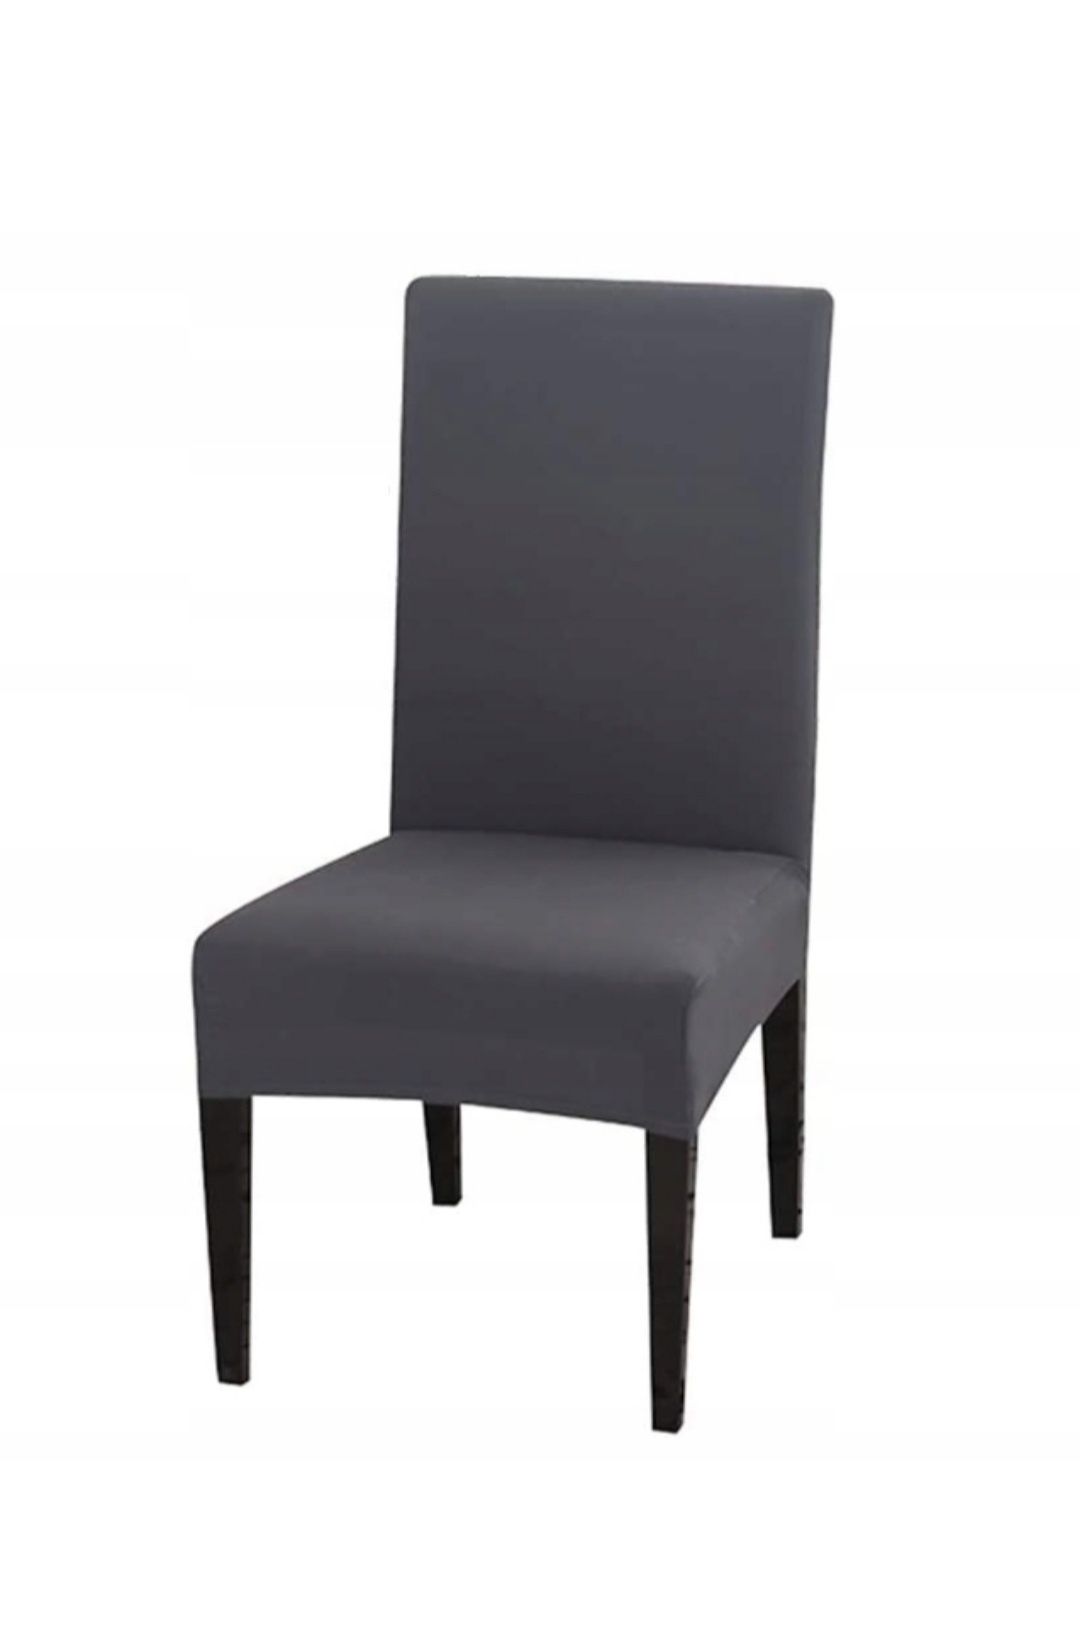 6x pokrowiec elastyczny na krzesło szary pokrowce promocja